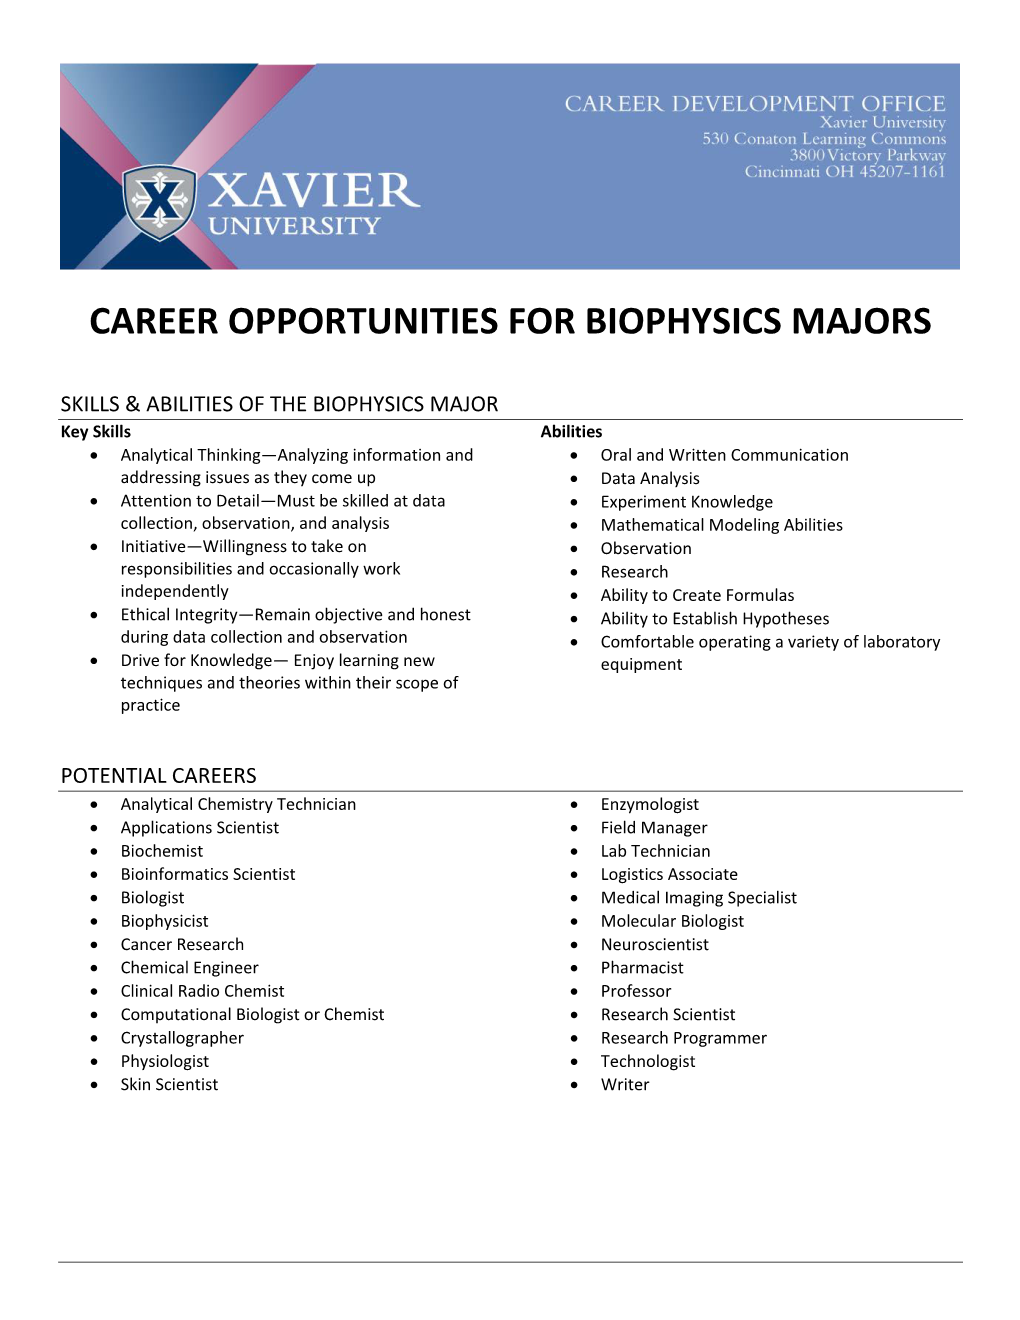 Career Opportunities for Biophysics Majors